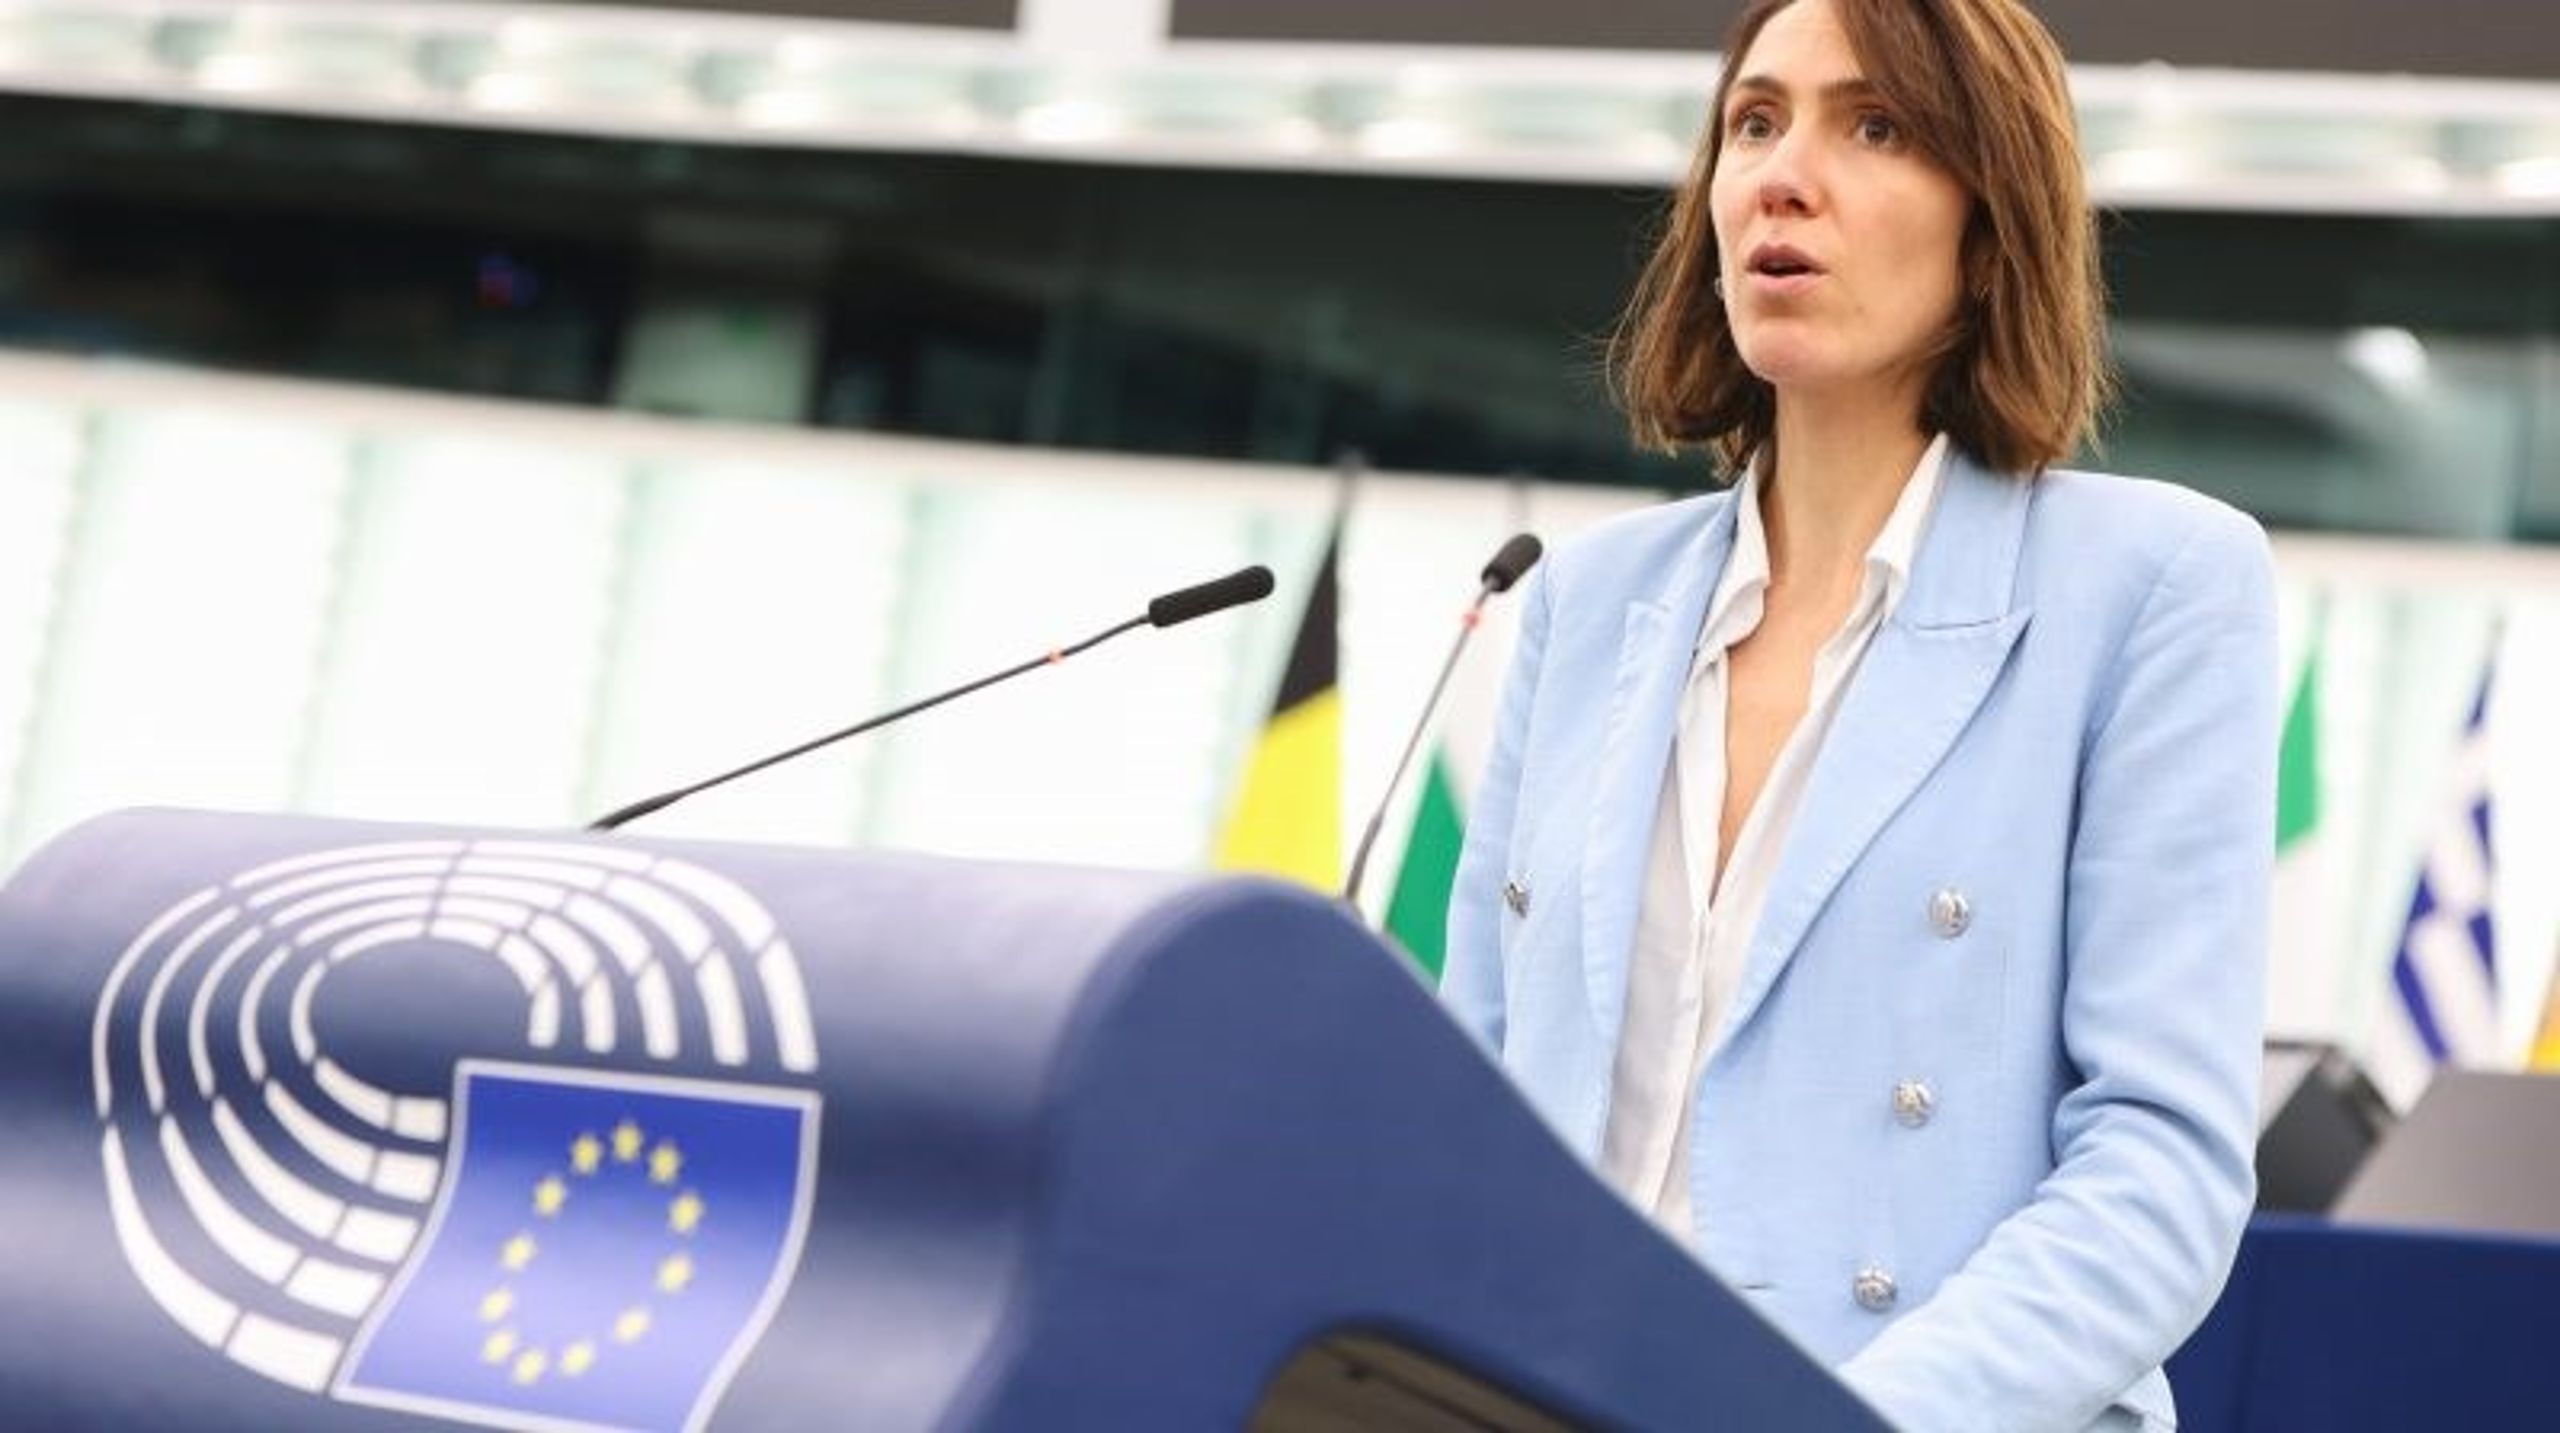 Franske Valérie Hayer kan kalde sig formand for Renew Europe, efter Malik Azmani har droppet sit kandidatur i kølvandet på den modstand, hollænderen har fået på baggrund af drøftelser med det højreradikale parti PVV.